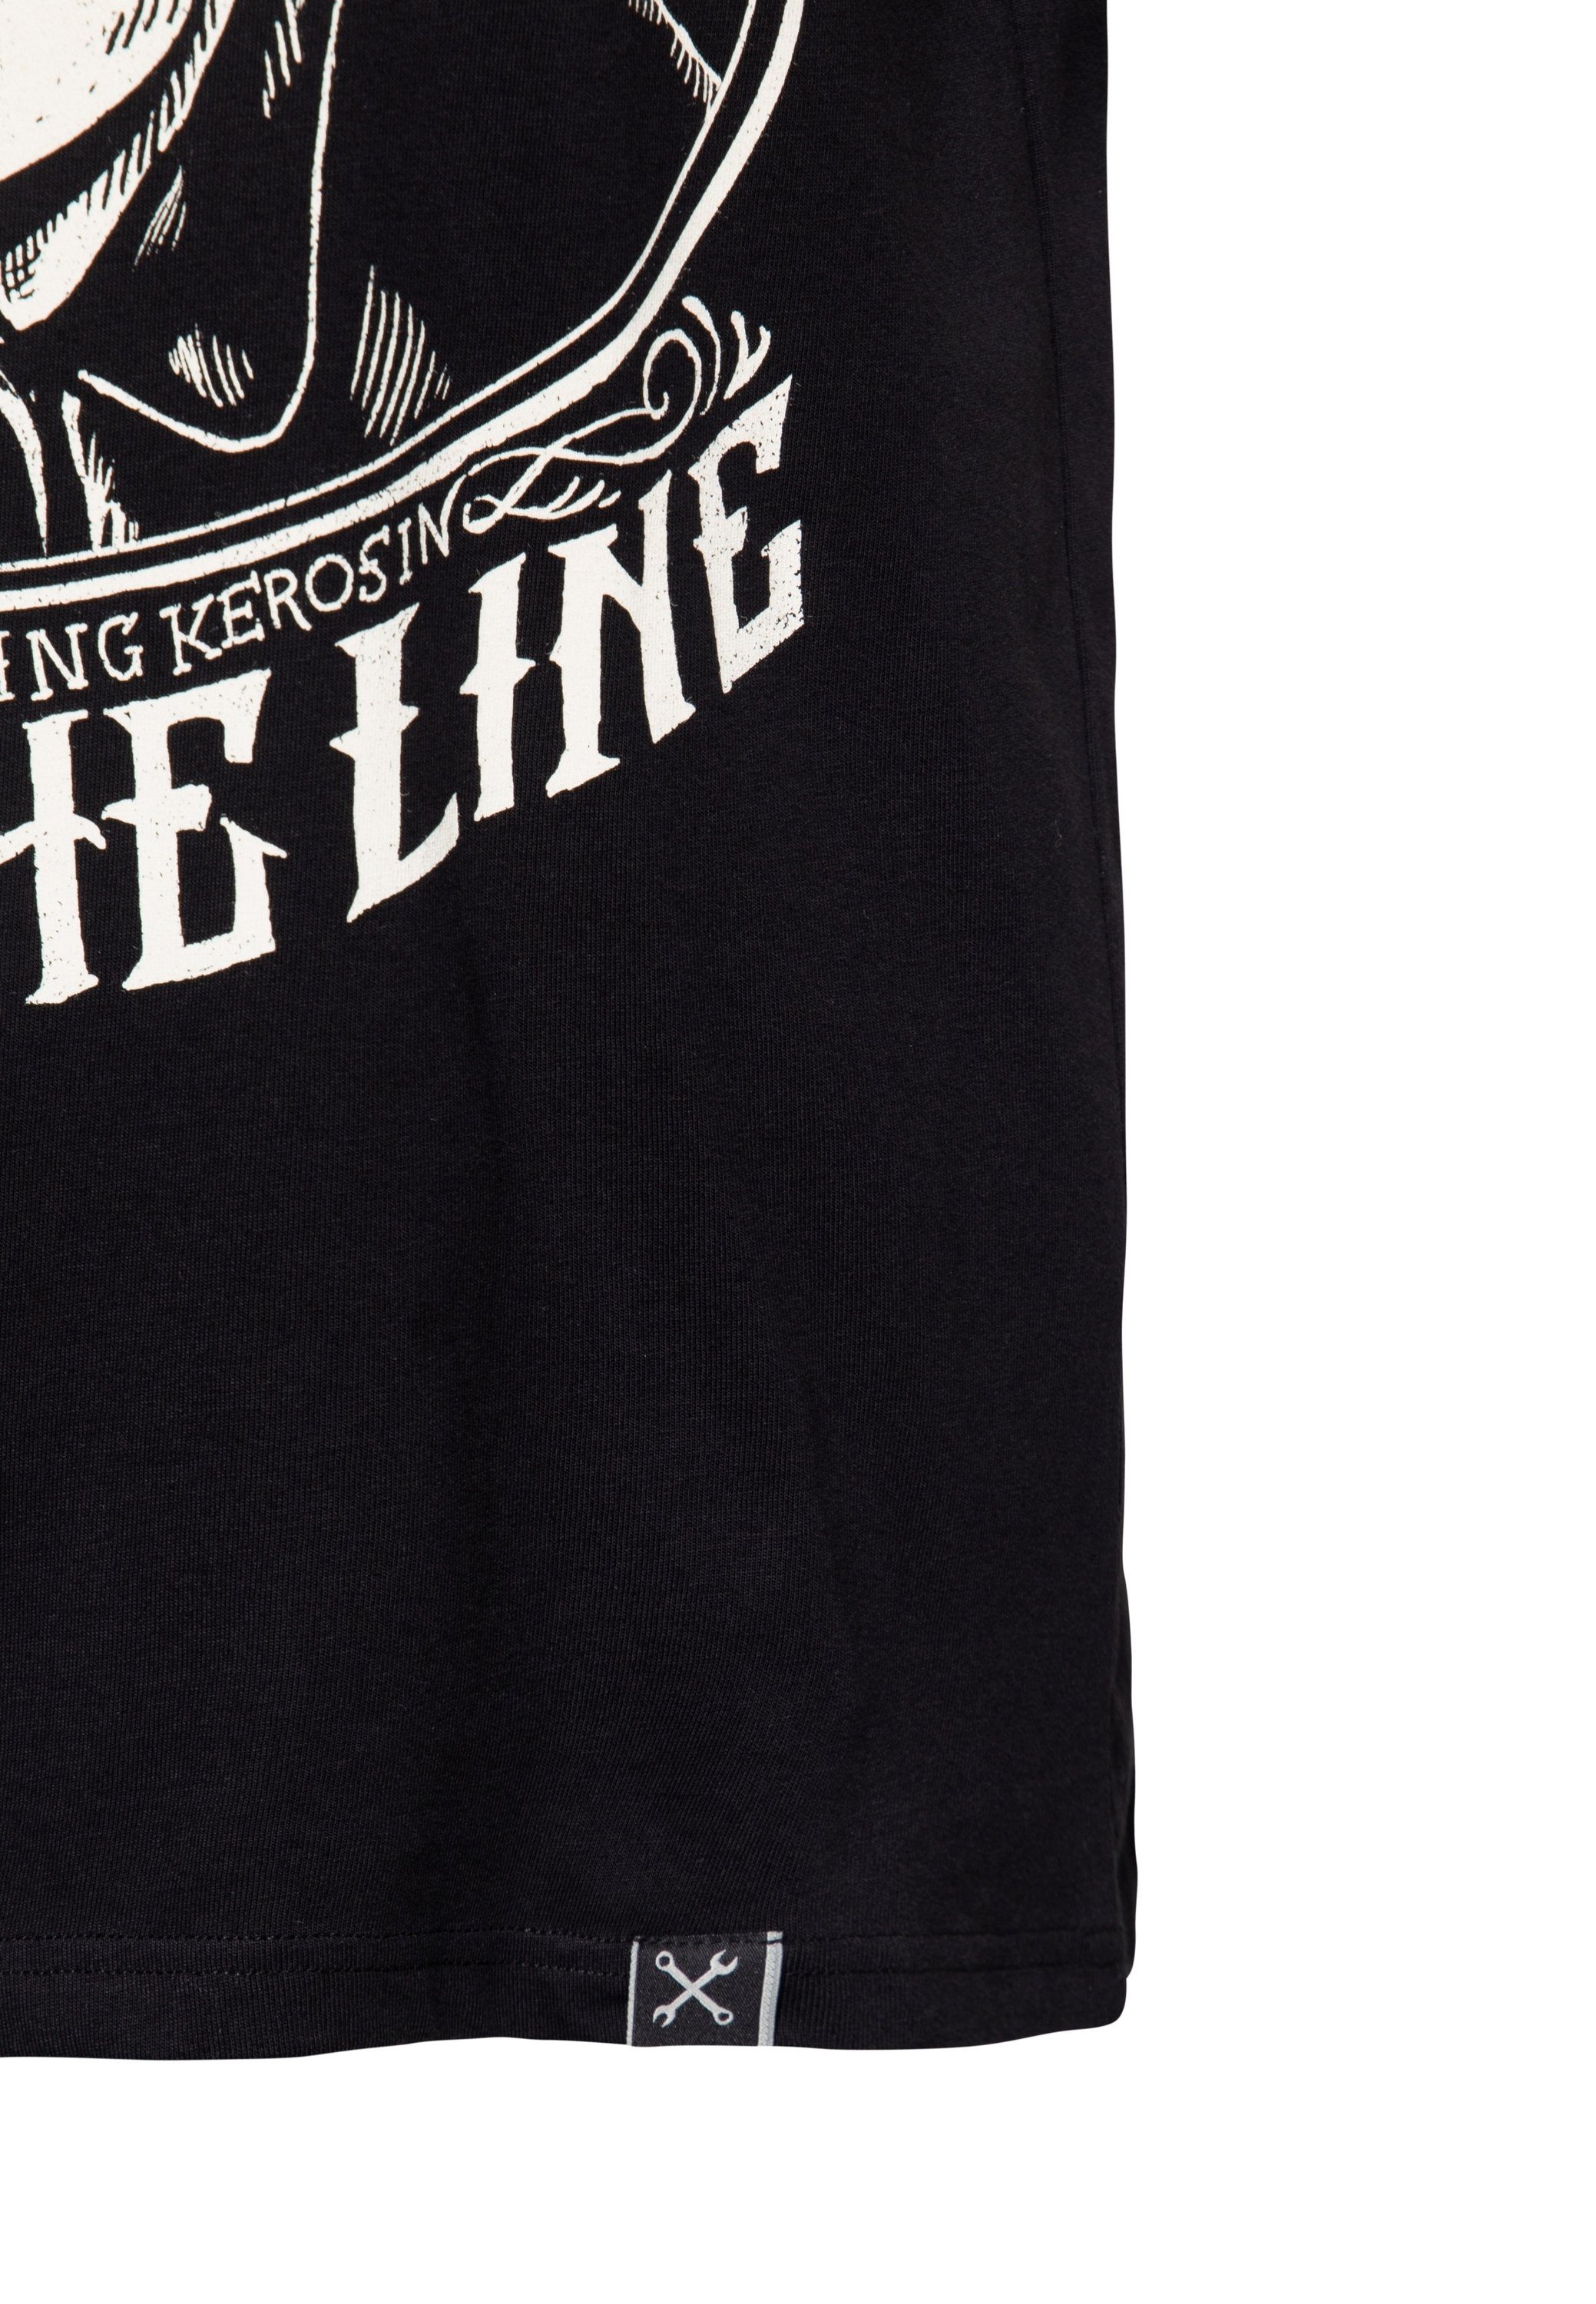 KingKerosin T-Shirt The Man Black In Print Rod Hot mit